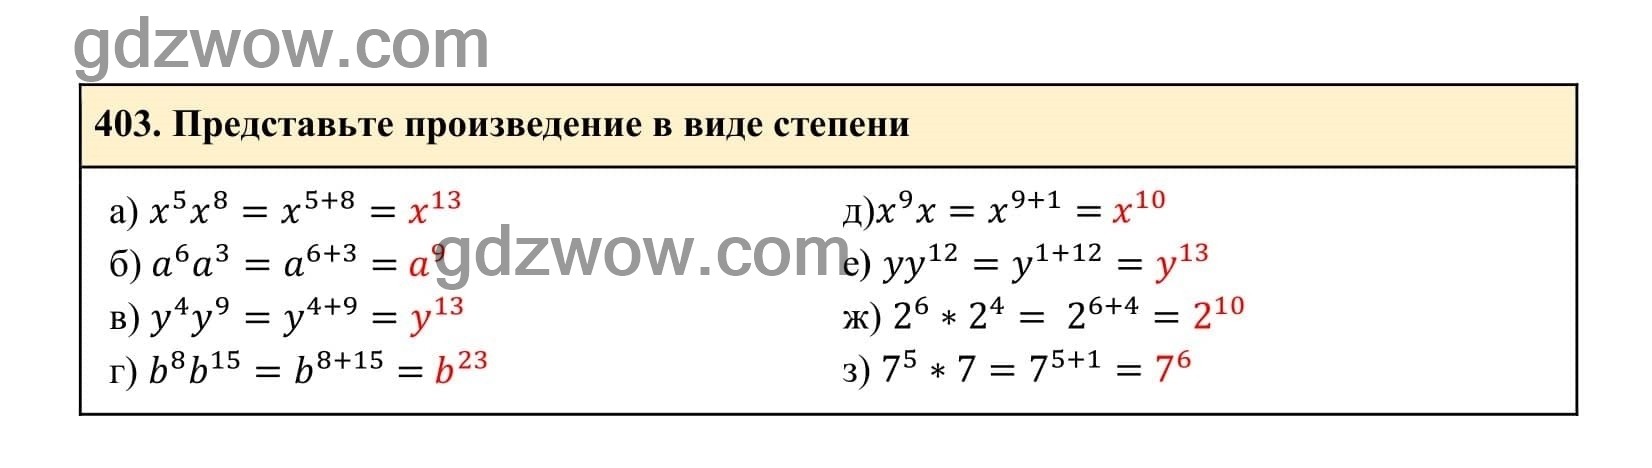 Упражнение 403 - ГДЗ по Алгебре 7 класс Учебник Макарычев (решебник) - GDZwow